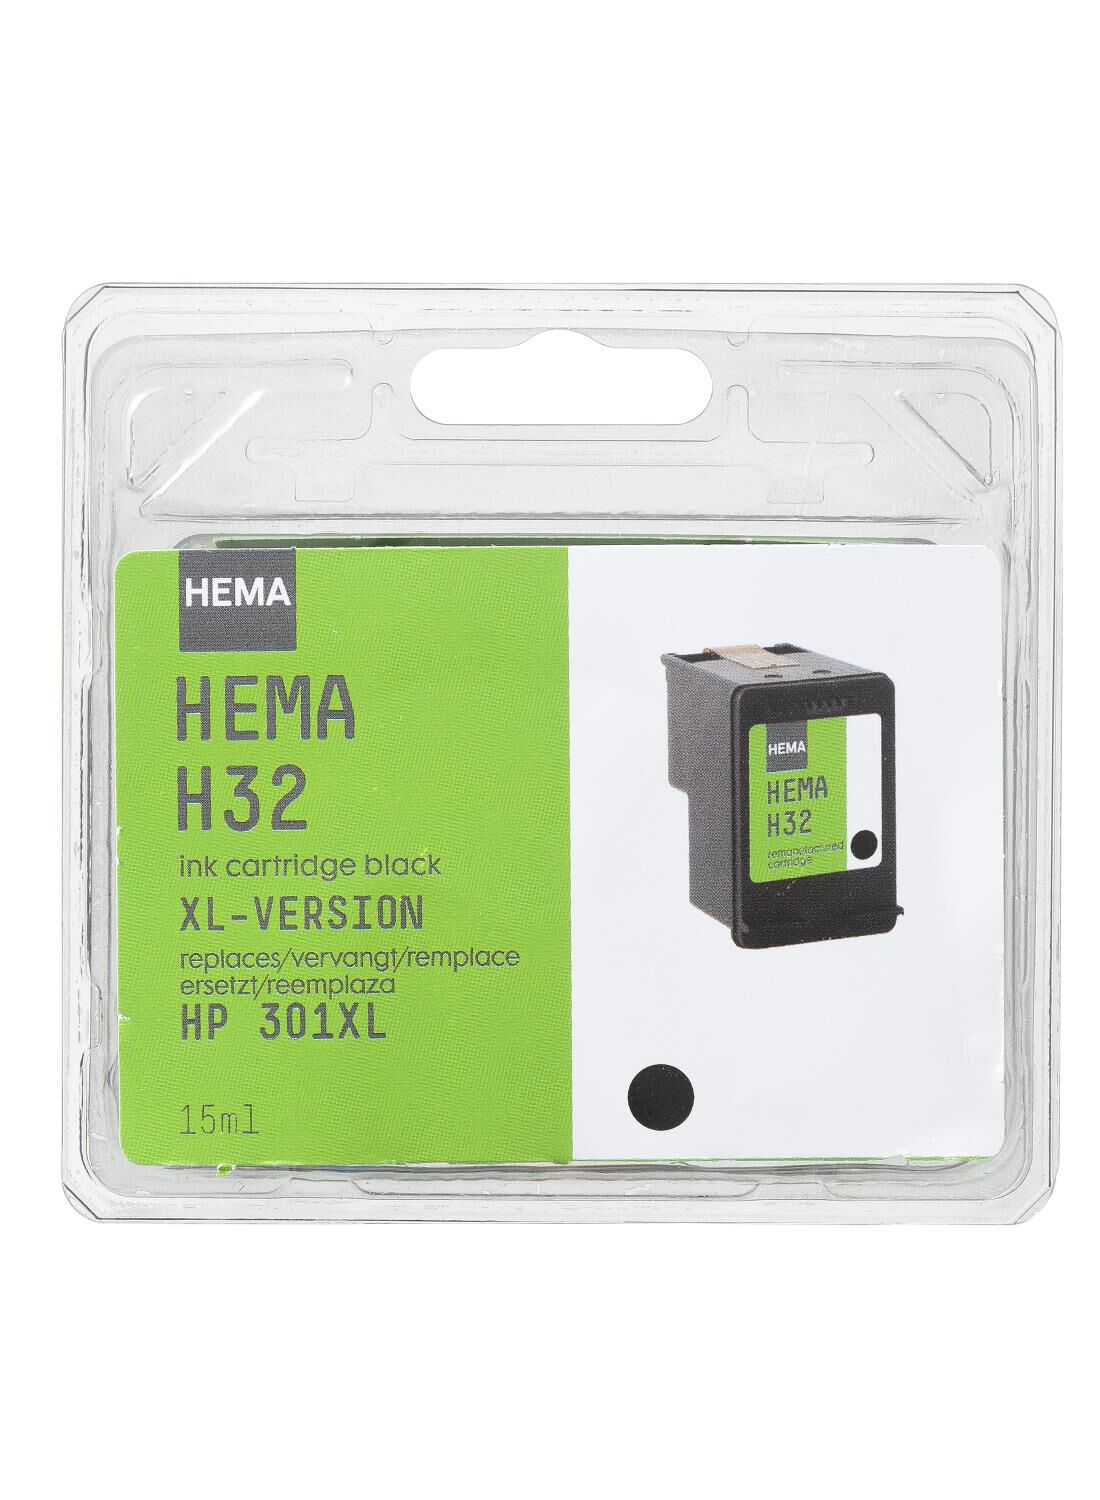 Reflectie Volgen Hilarisch HEMA cartridge H32 voor de HP301 XL zwart - HEMA